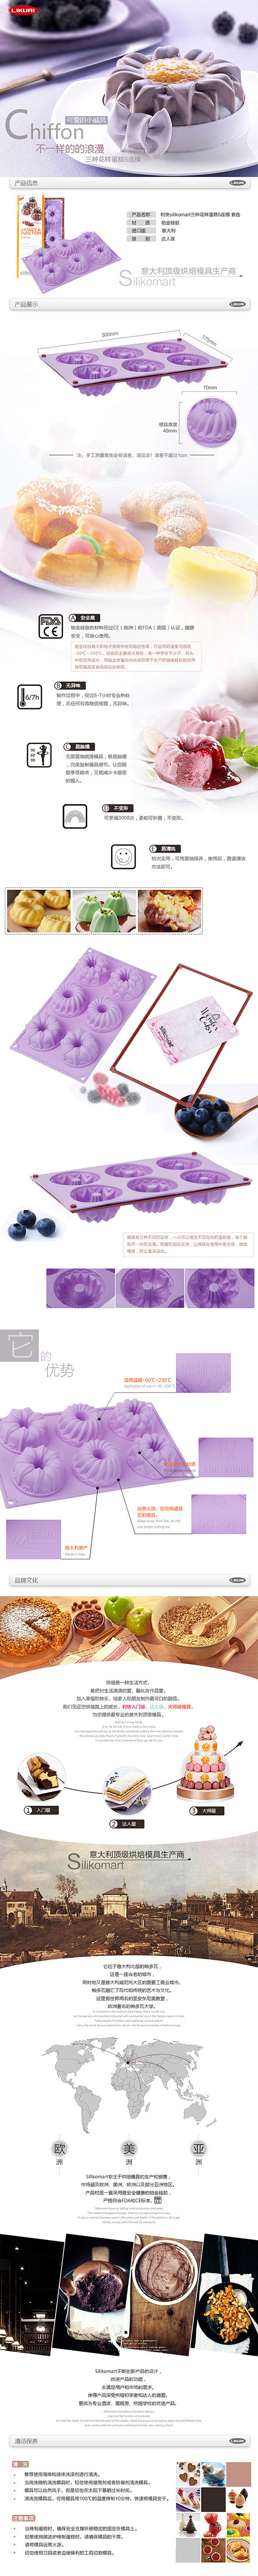 琥珀电商-蛋糕模详情页设计 - 视觉中国...